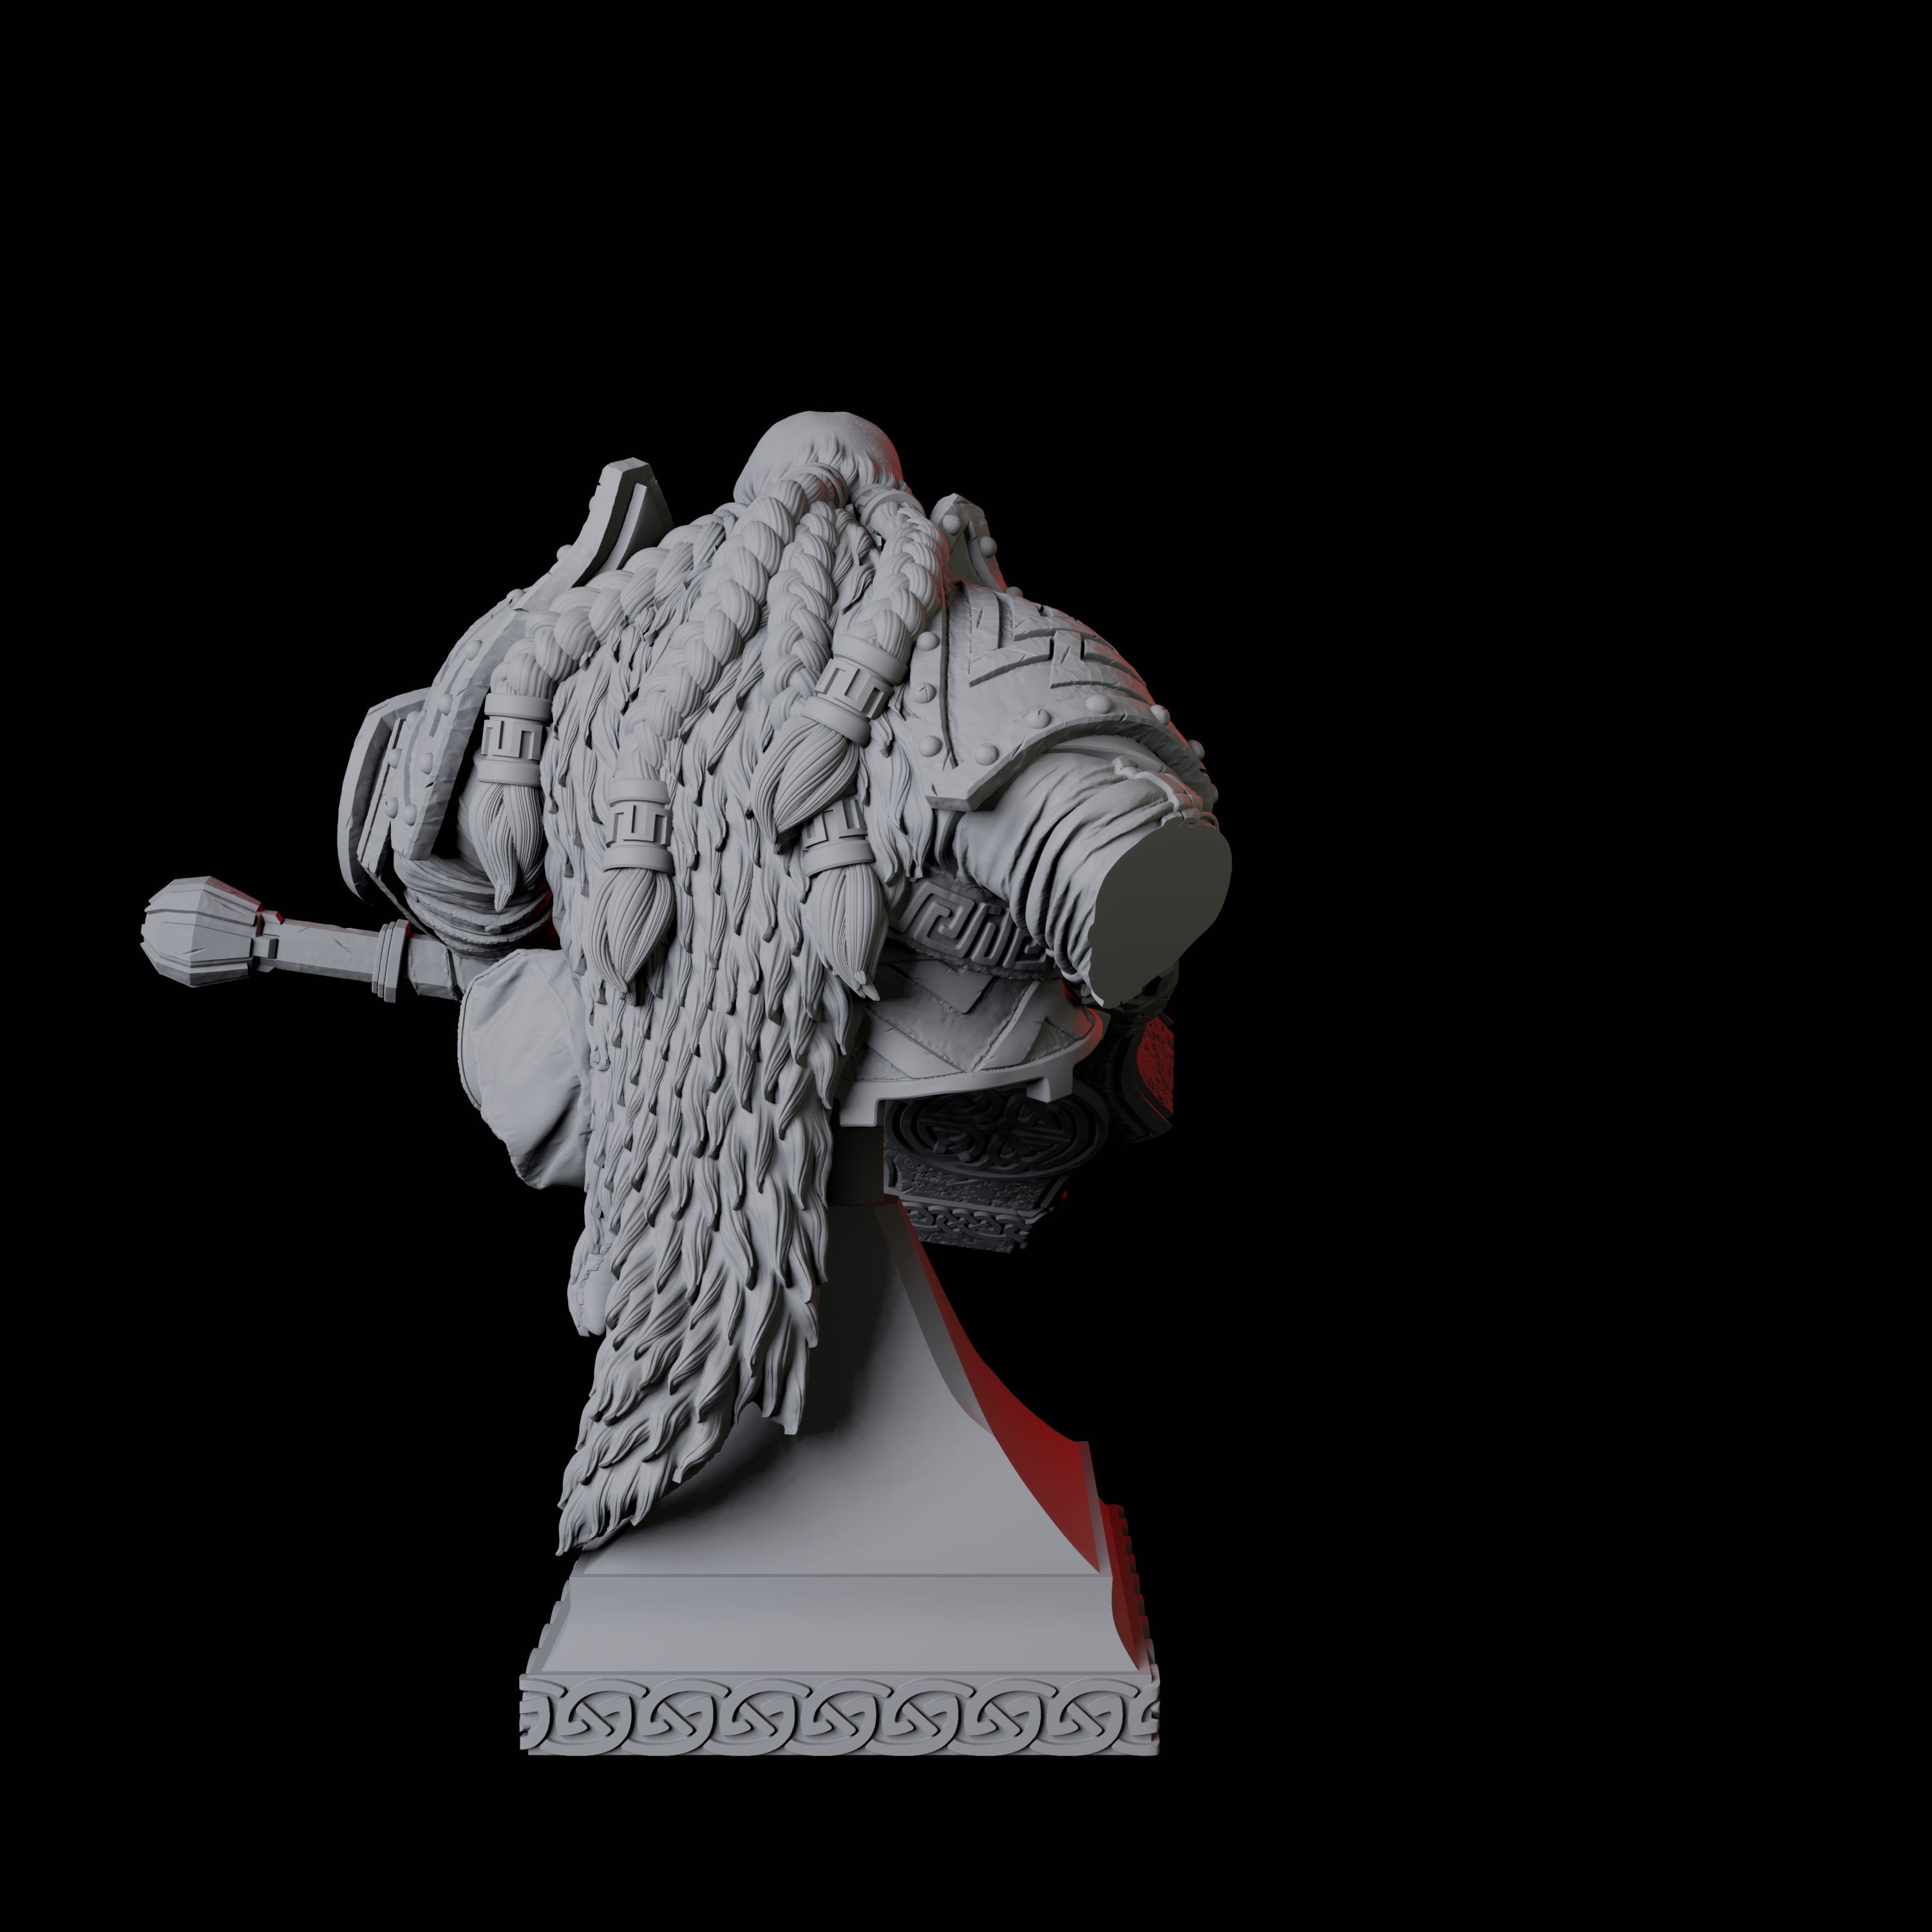 Battlehammer Dwarf Bust Miniature for Dungeons and Dragons